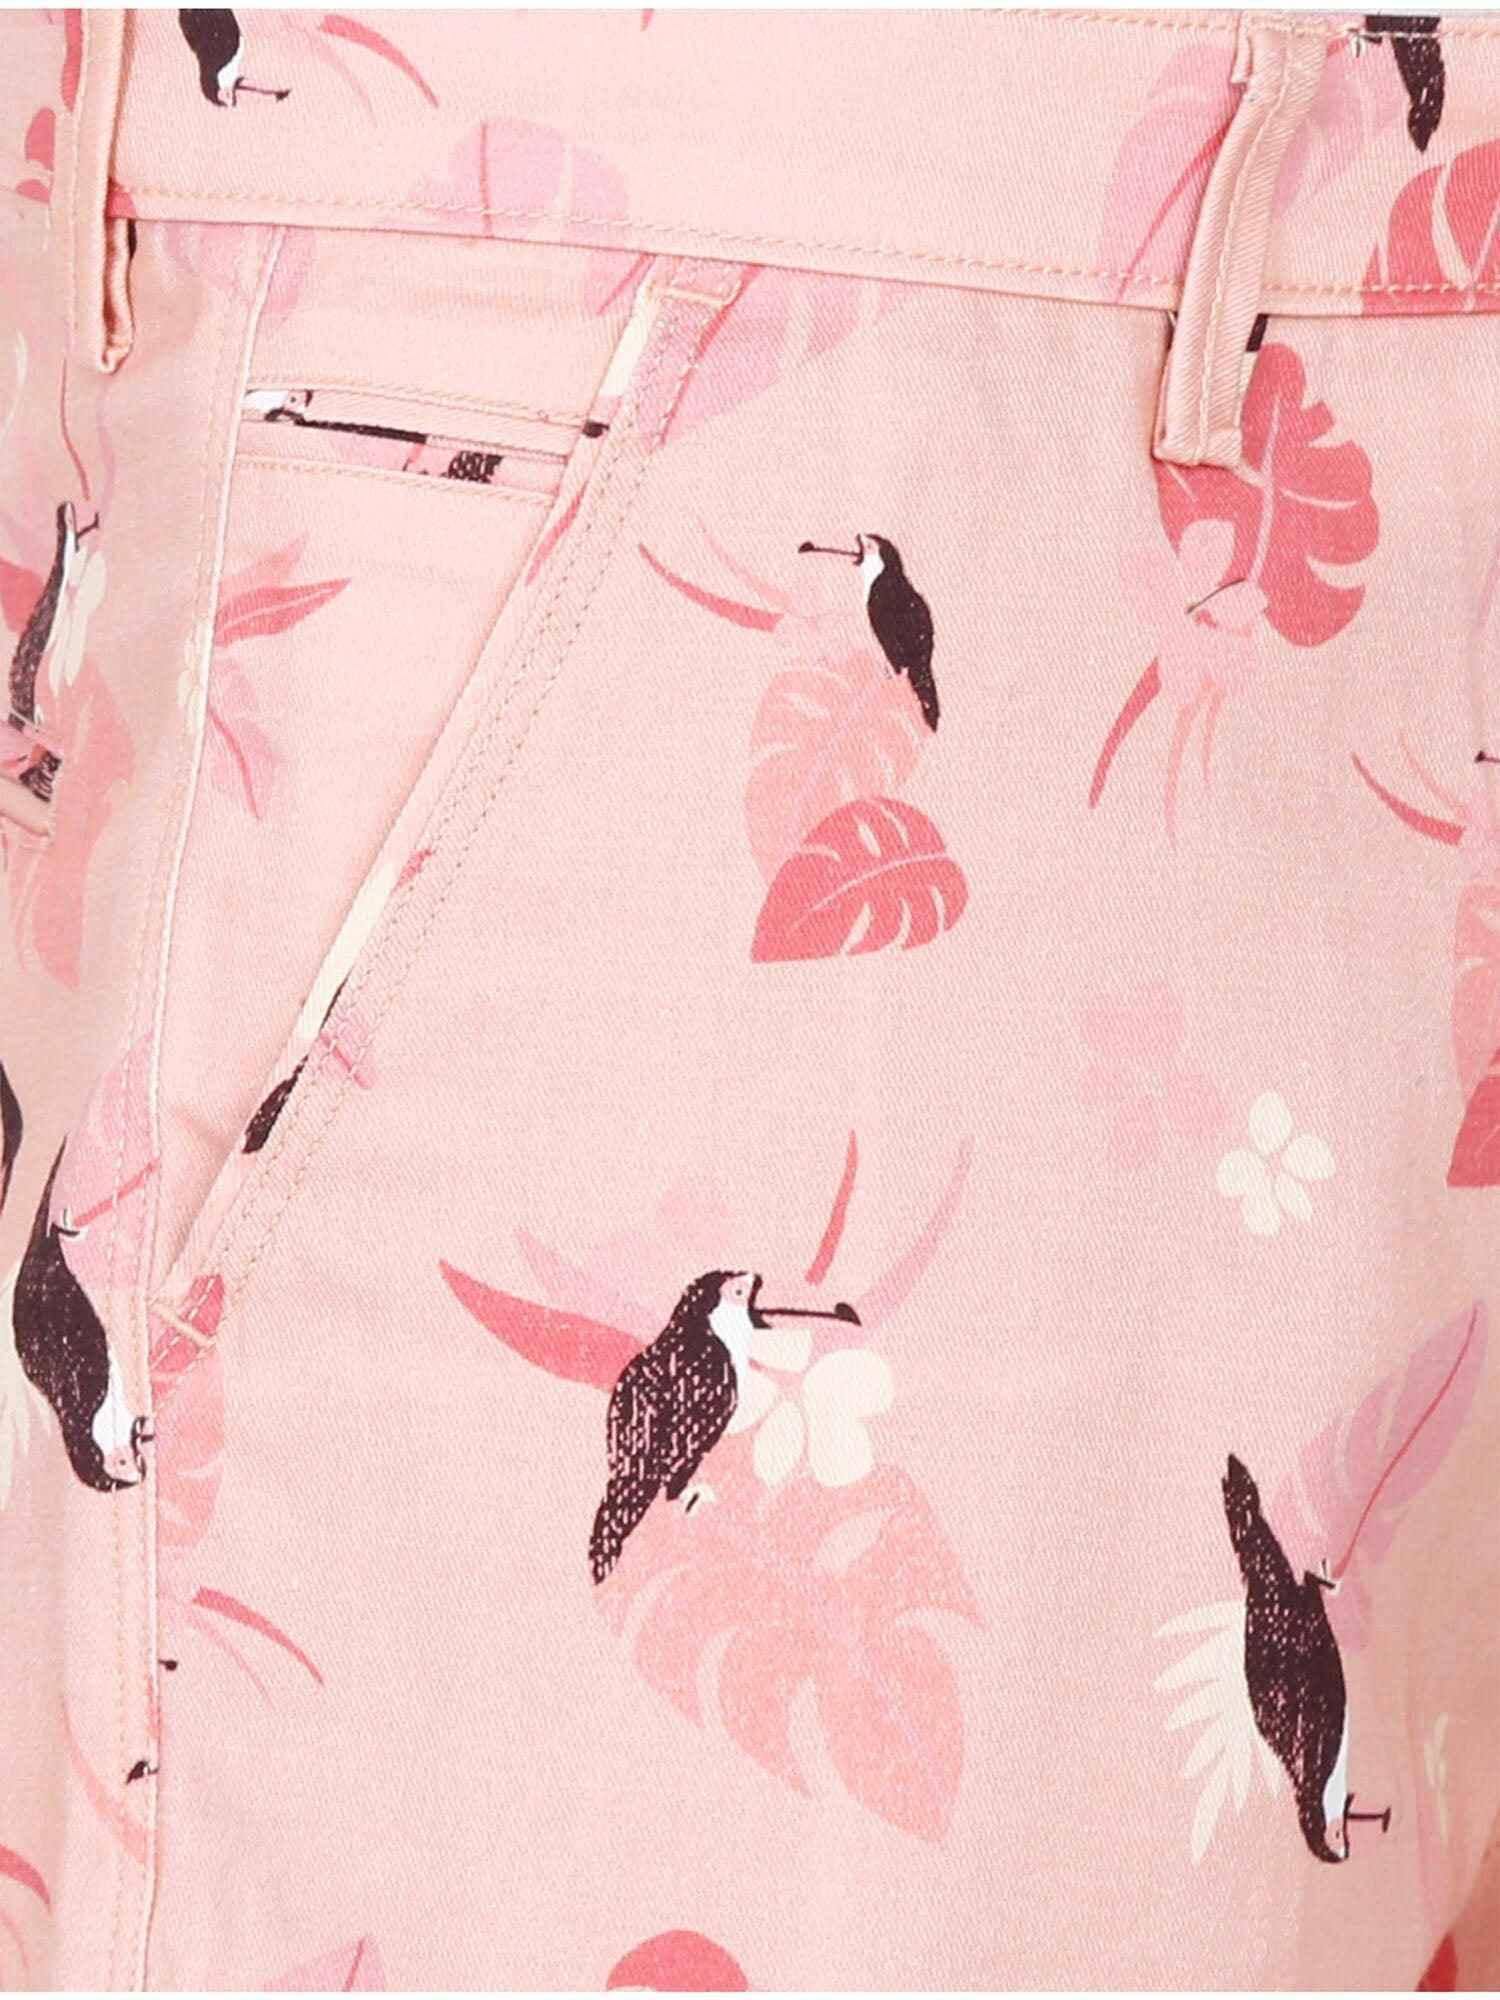 Peach Men Bird Printed Cotton Shorts - Guniaa Fashions